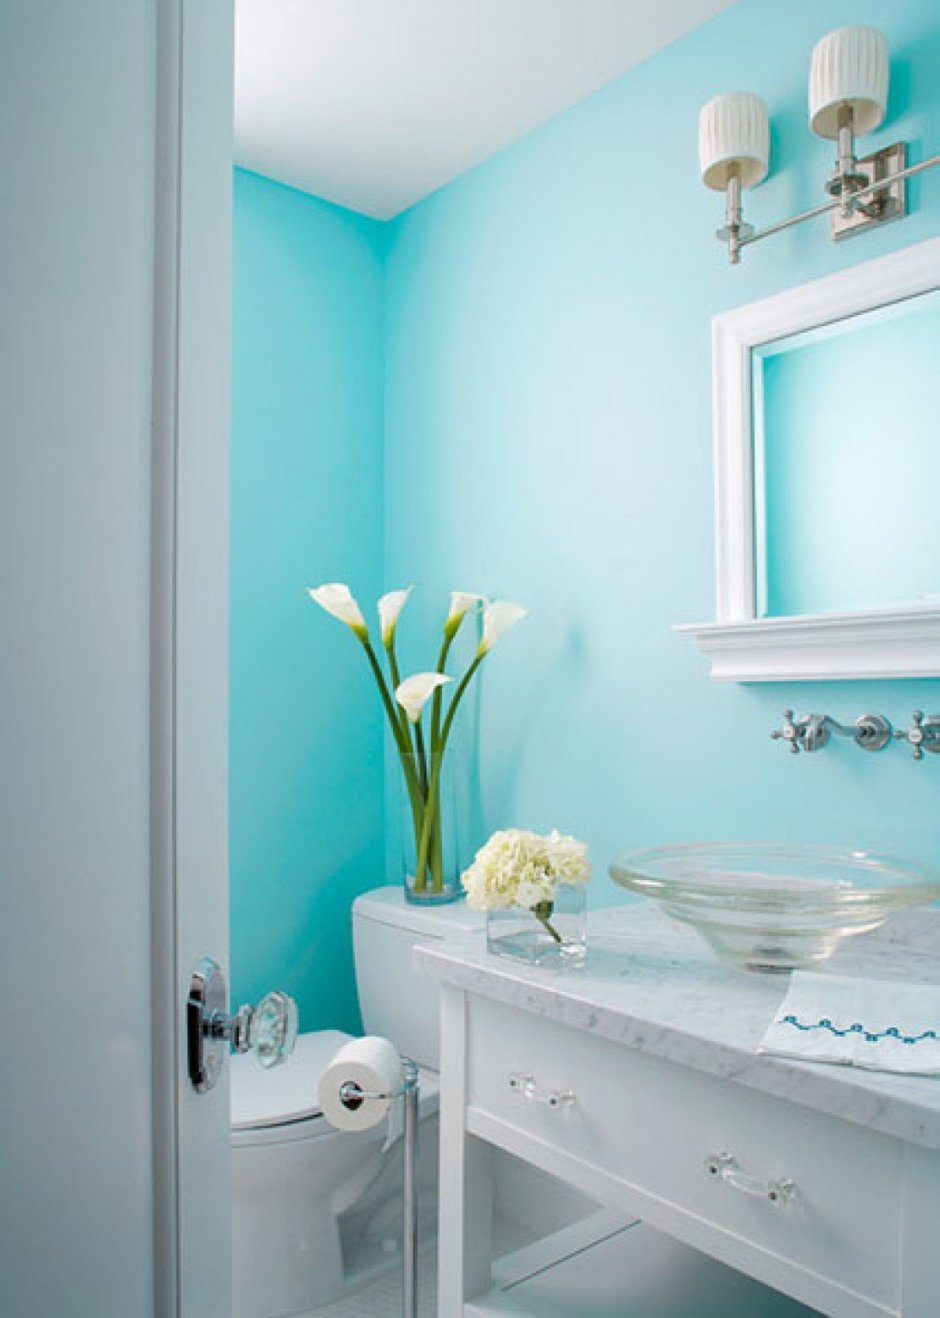 Голубая краска в ванной комнате